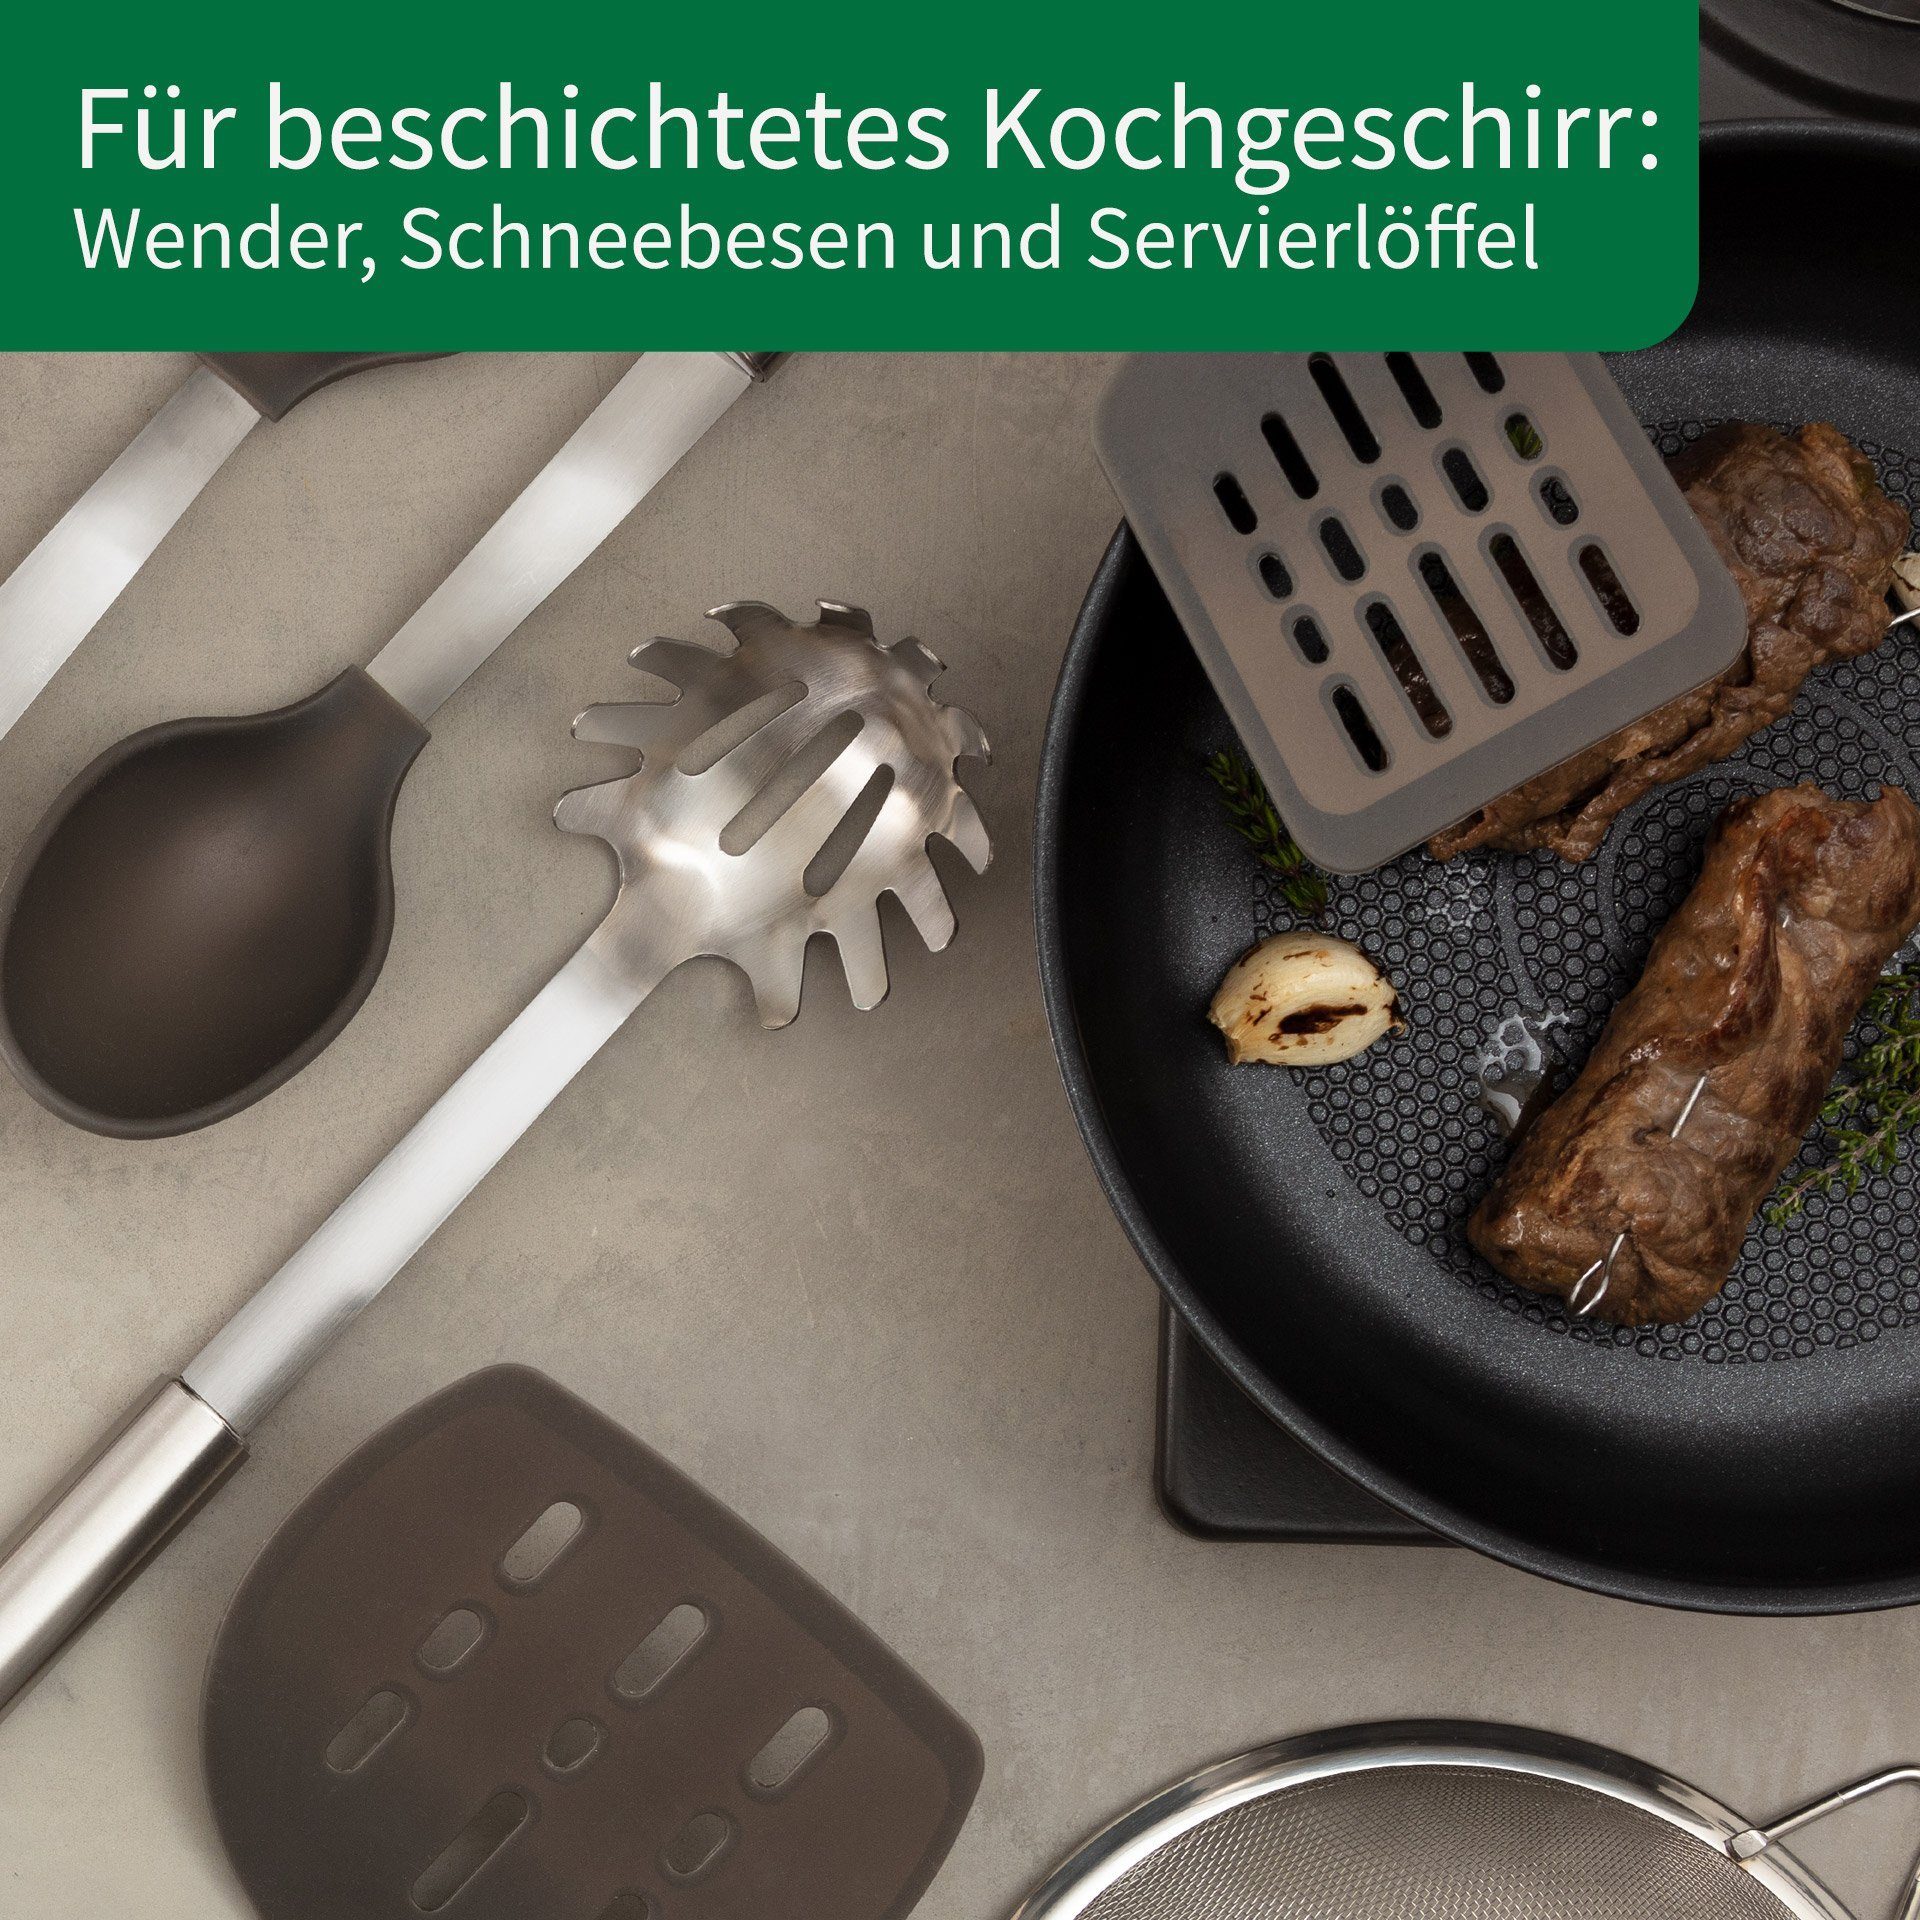 München Chefkoch Fackelmann trifft Kochbesteck-Set